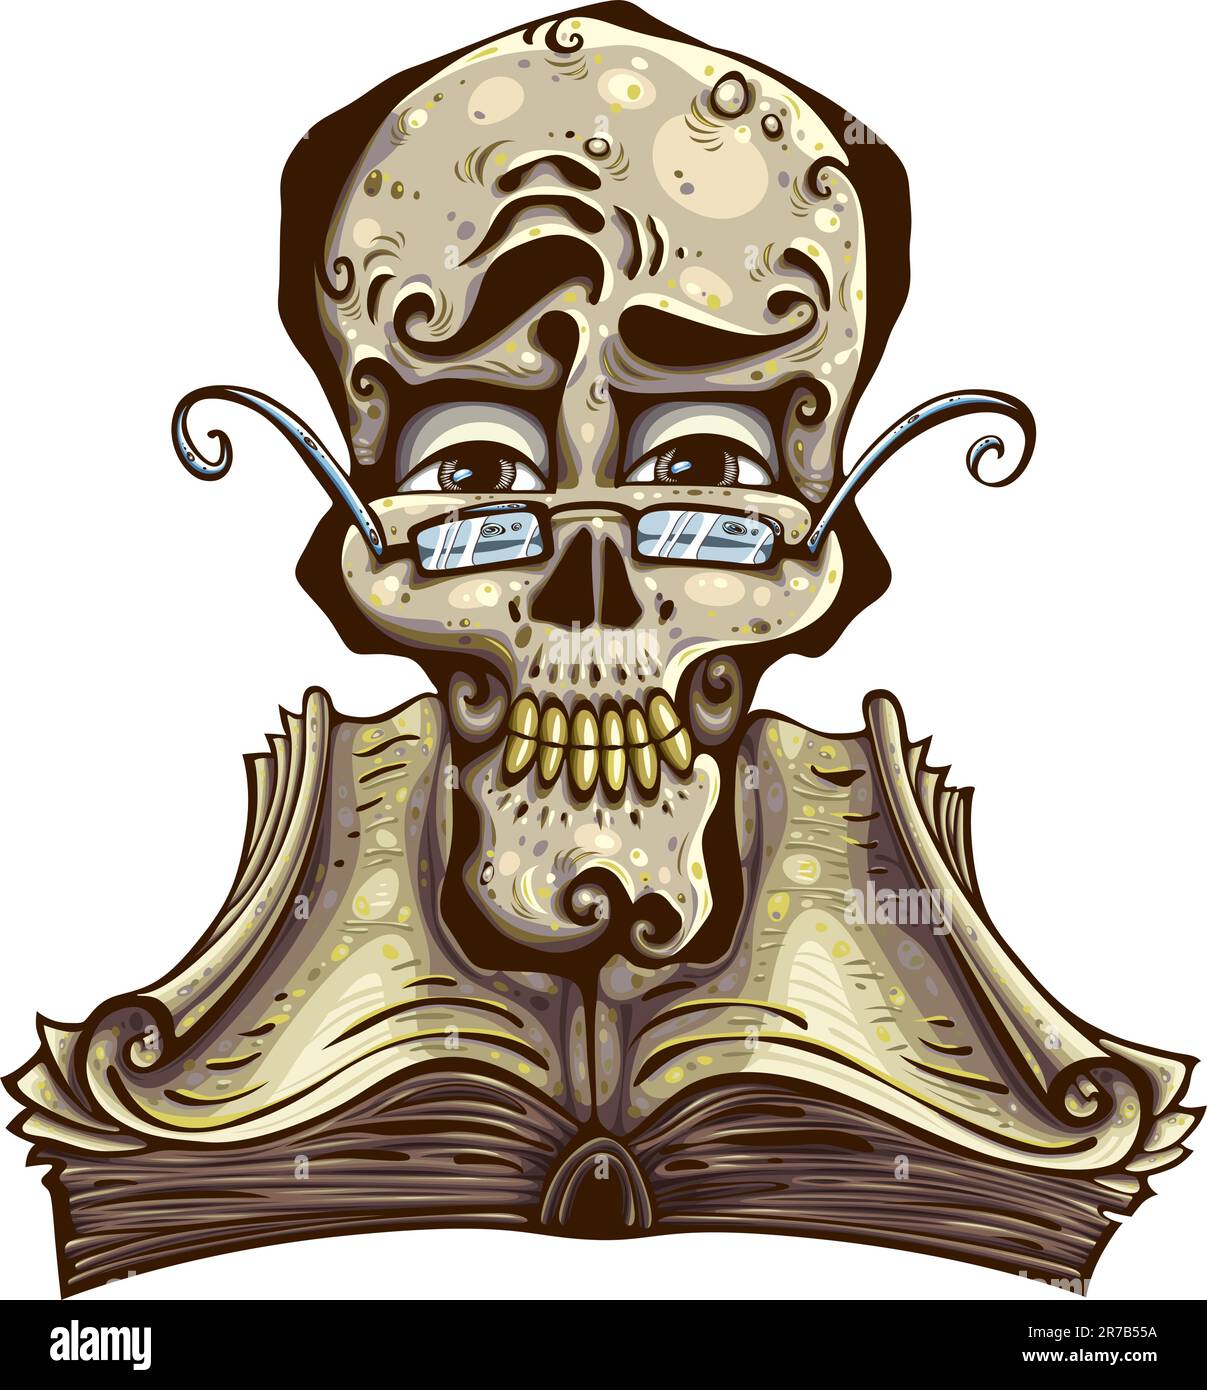 Schlauer Schädel. Der Schädel trägt eine Brille über einem alten Buch mit lockigen Seiten. Detaillierte Abbildung. Stock Vektor